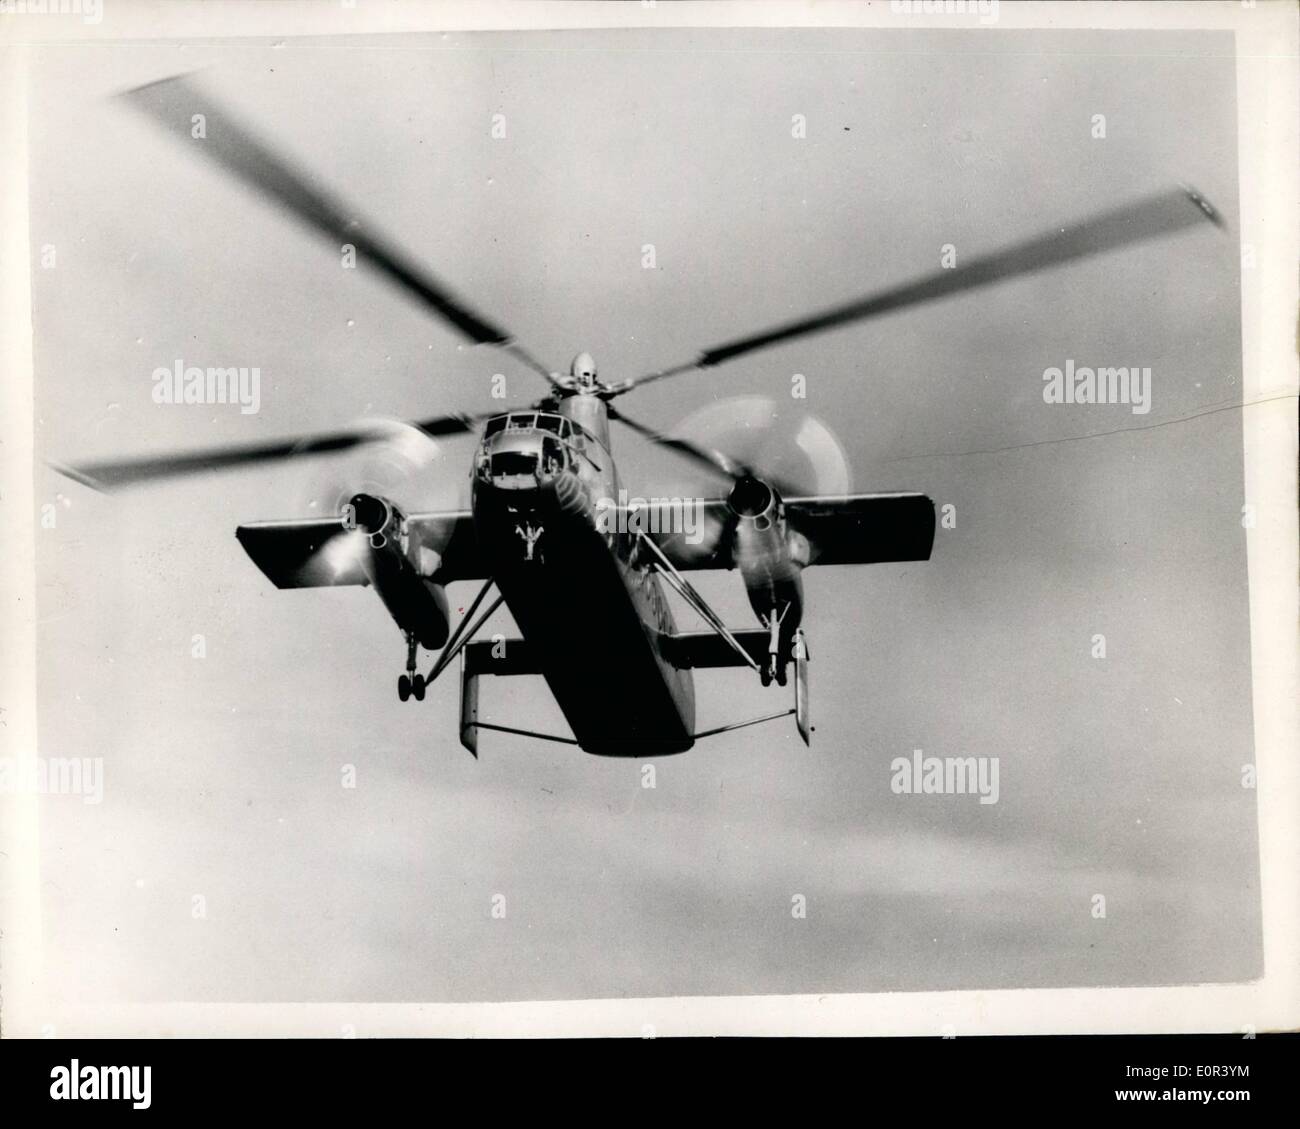 Nov 11, 1957 - El Hada Rotodyne despega en la prueba británica más revolucionario avión: se dice que es el helicóptero más grande y revolucionaria en el país - el 40-50 seaten Fairy Rotodyne, realizó su primer vuelo en White Waltham cerca es un idenhead hoy. Fue pilotado por Ronald Gellatly Leadar SQD - 36 años er de Nueva Zelanda . El Rotodyne es un avión que vuela verticalmente como un helicóptero y un avión hacia adelante como ortodoxos. Tiene alas stubby corto y dos motores jet prop que daves, ex son alrededor de 180 mph. Tres coches ser estibados yo....su fuselaje Foto de stock